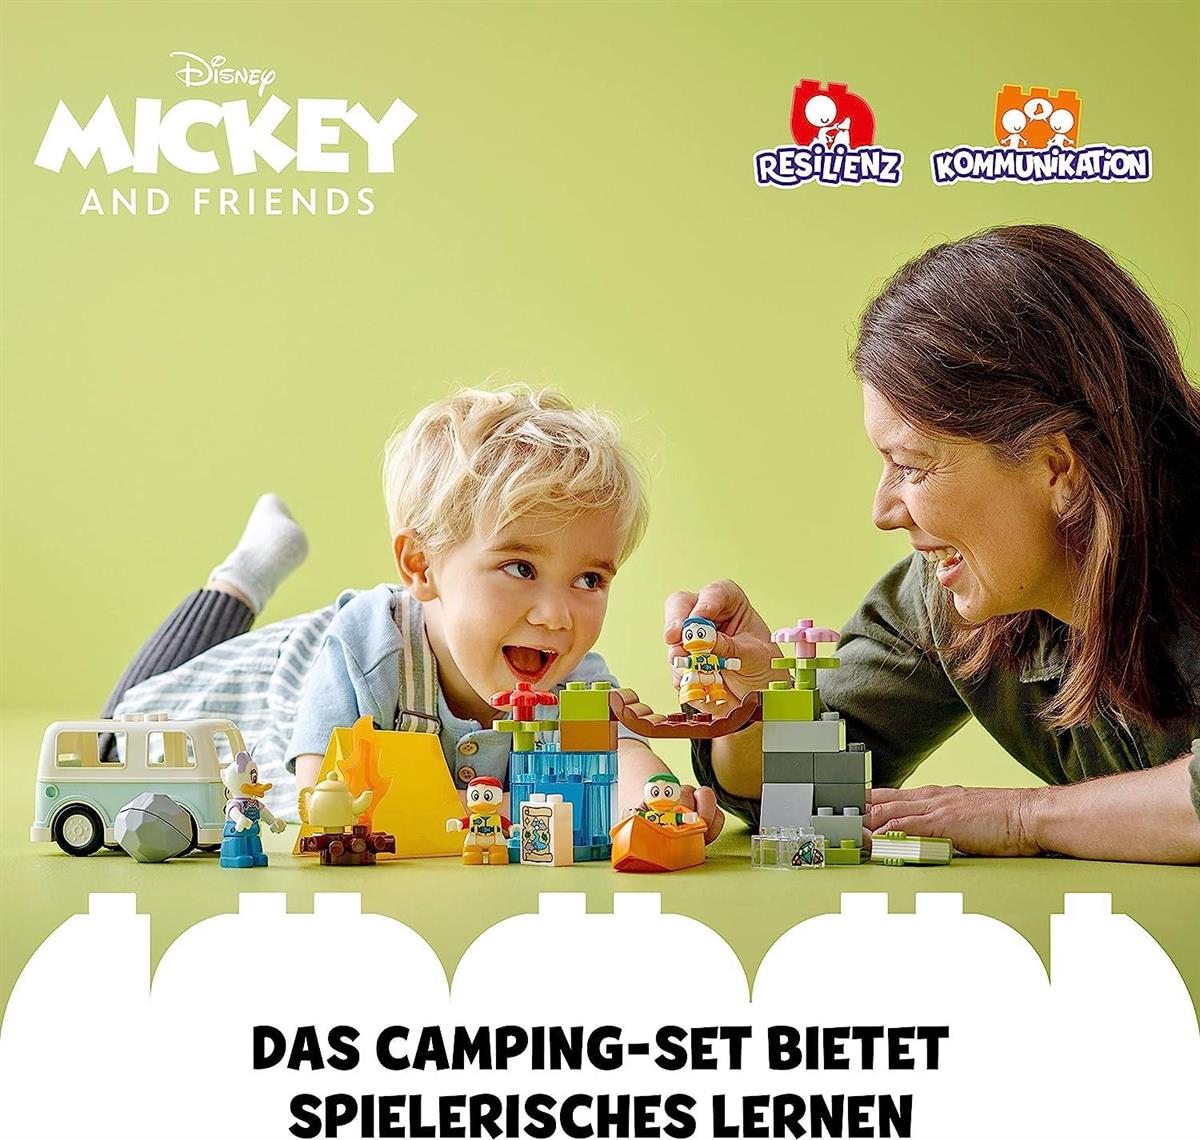 Lego Duplo Disney Mickey and Friends Kamp Macerası 10997 | Toysall